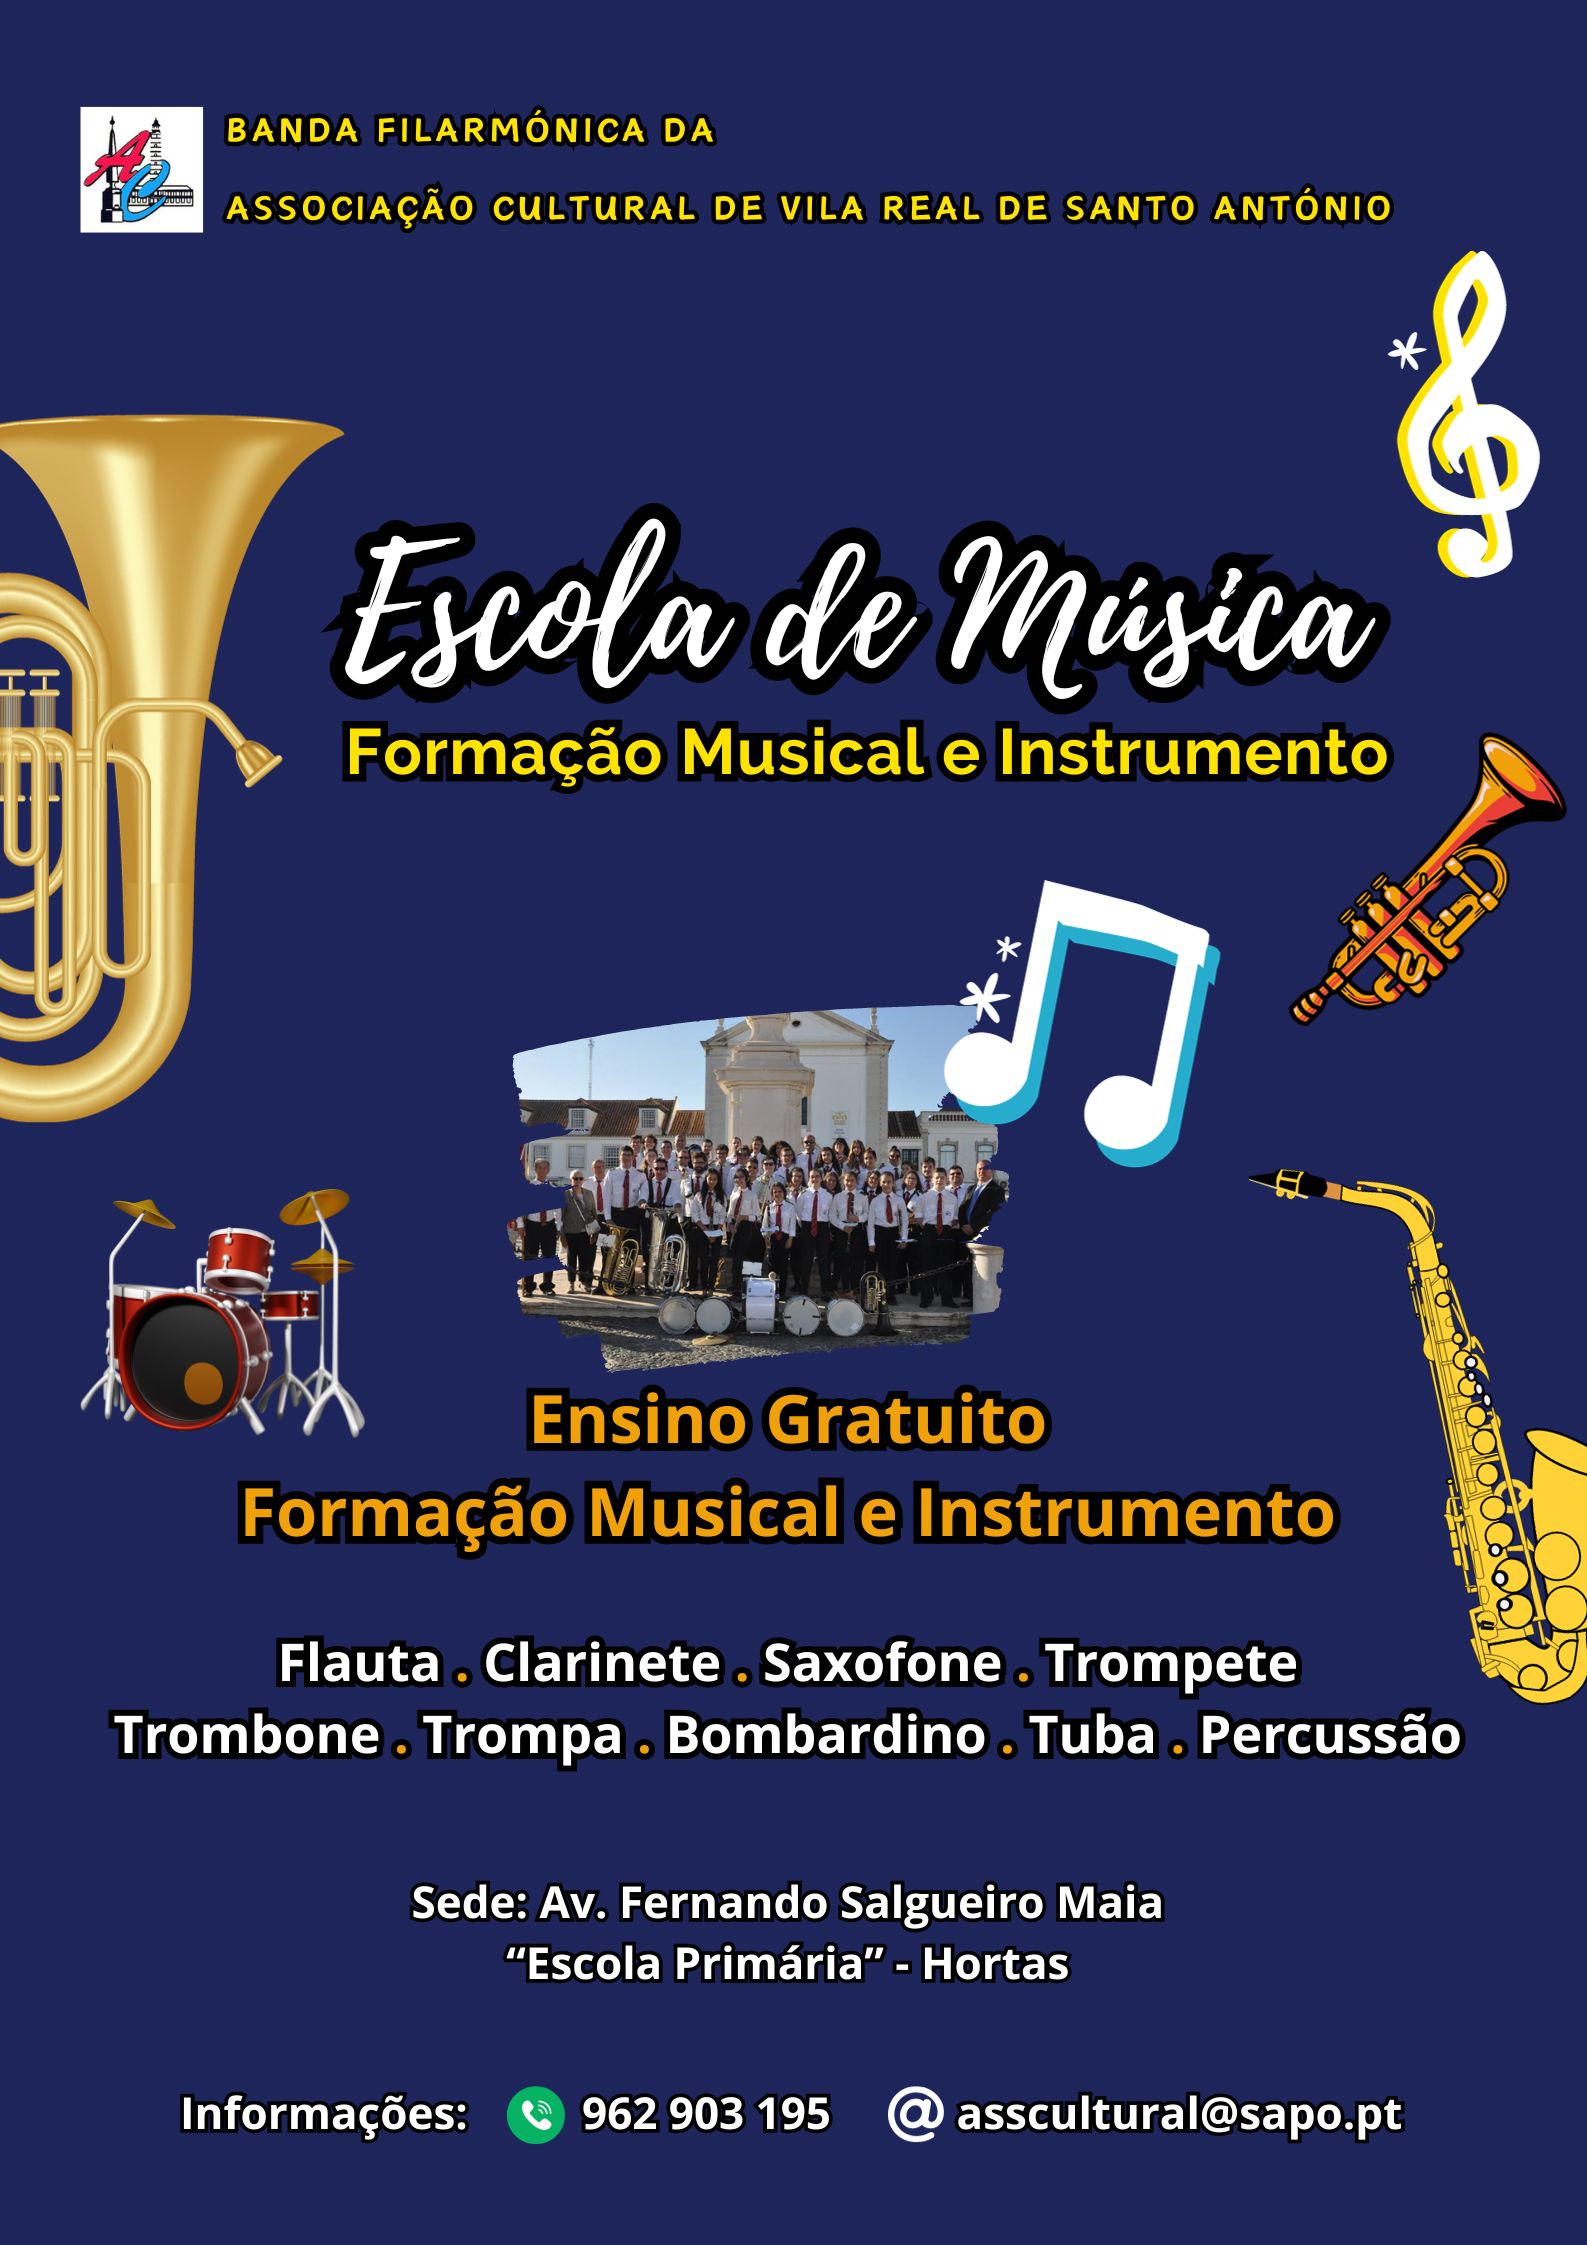 Escola de música Banda Filarmónica da Associação Cultural de Vila Real de Santo António